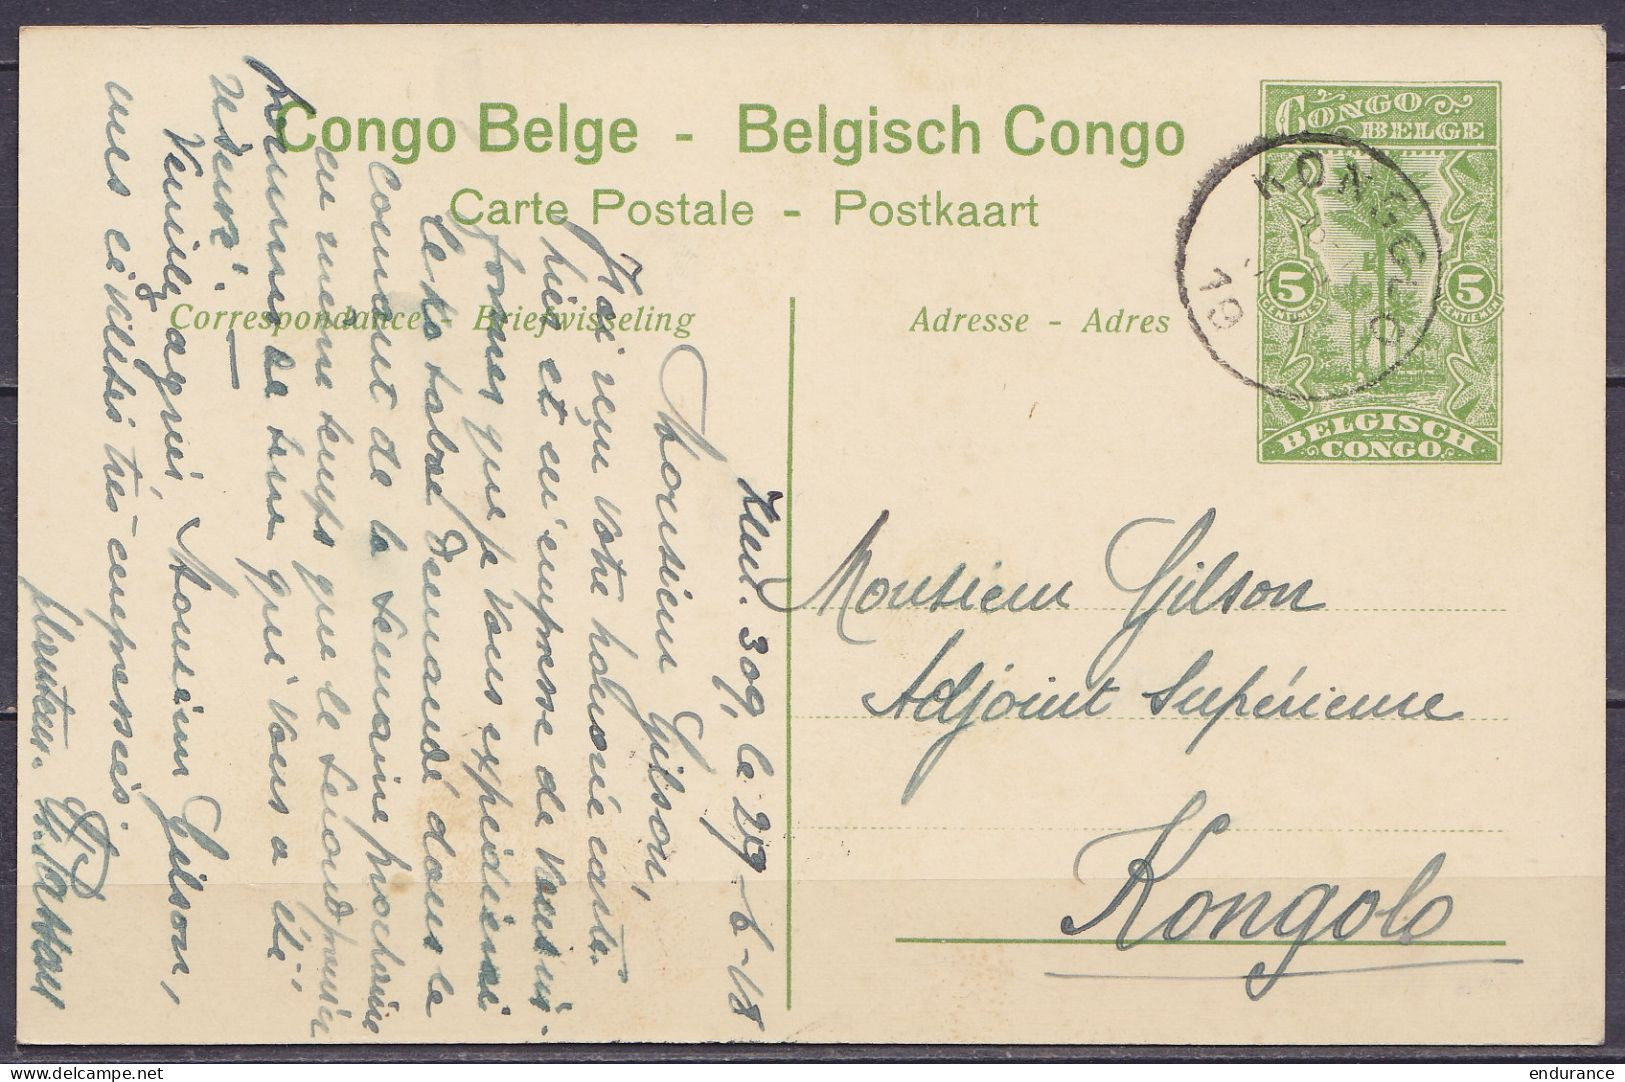 Congo Belge - EP CP 5c Vert "La Ruzizi" D'un Planteur Càd KONGOLO /29 JUIN 1918 Pour Adjoint Supérieur André Gilson E/V  - Entiers Postaux